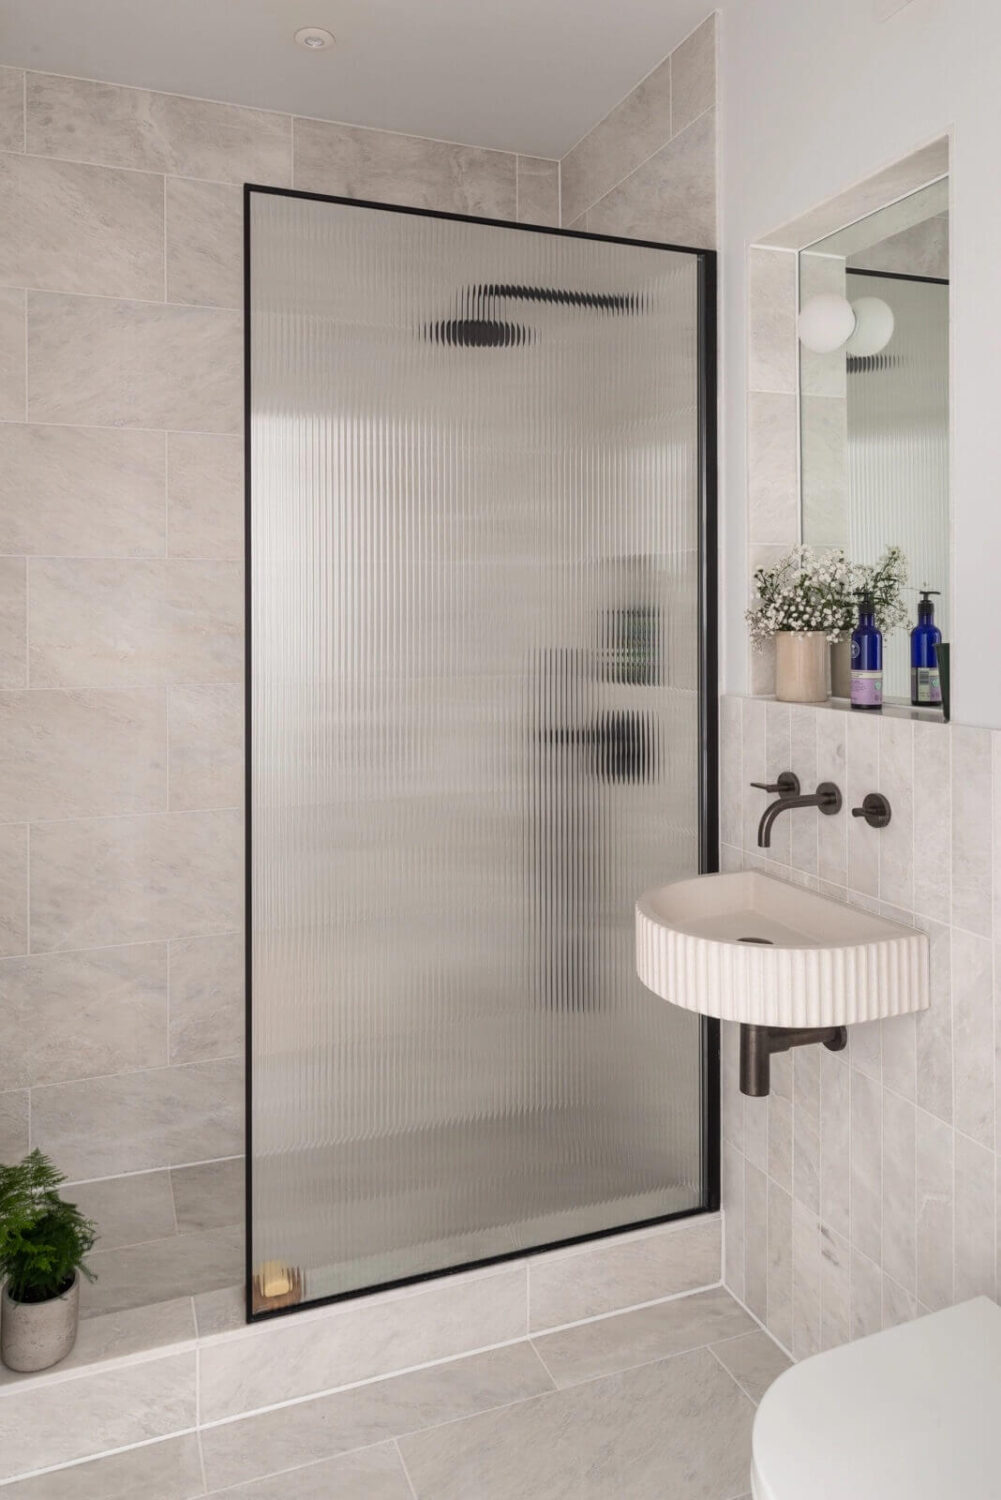 4 màu gạch tuyệt vời giúp phòng tắm nhỏ trở nên đẹp và rộng hơn - Ảnh 3